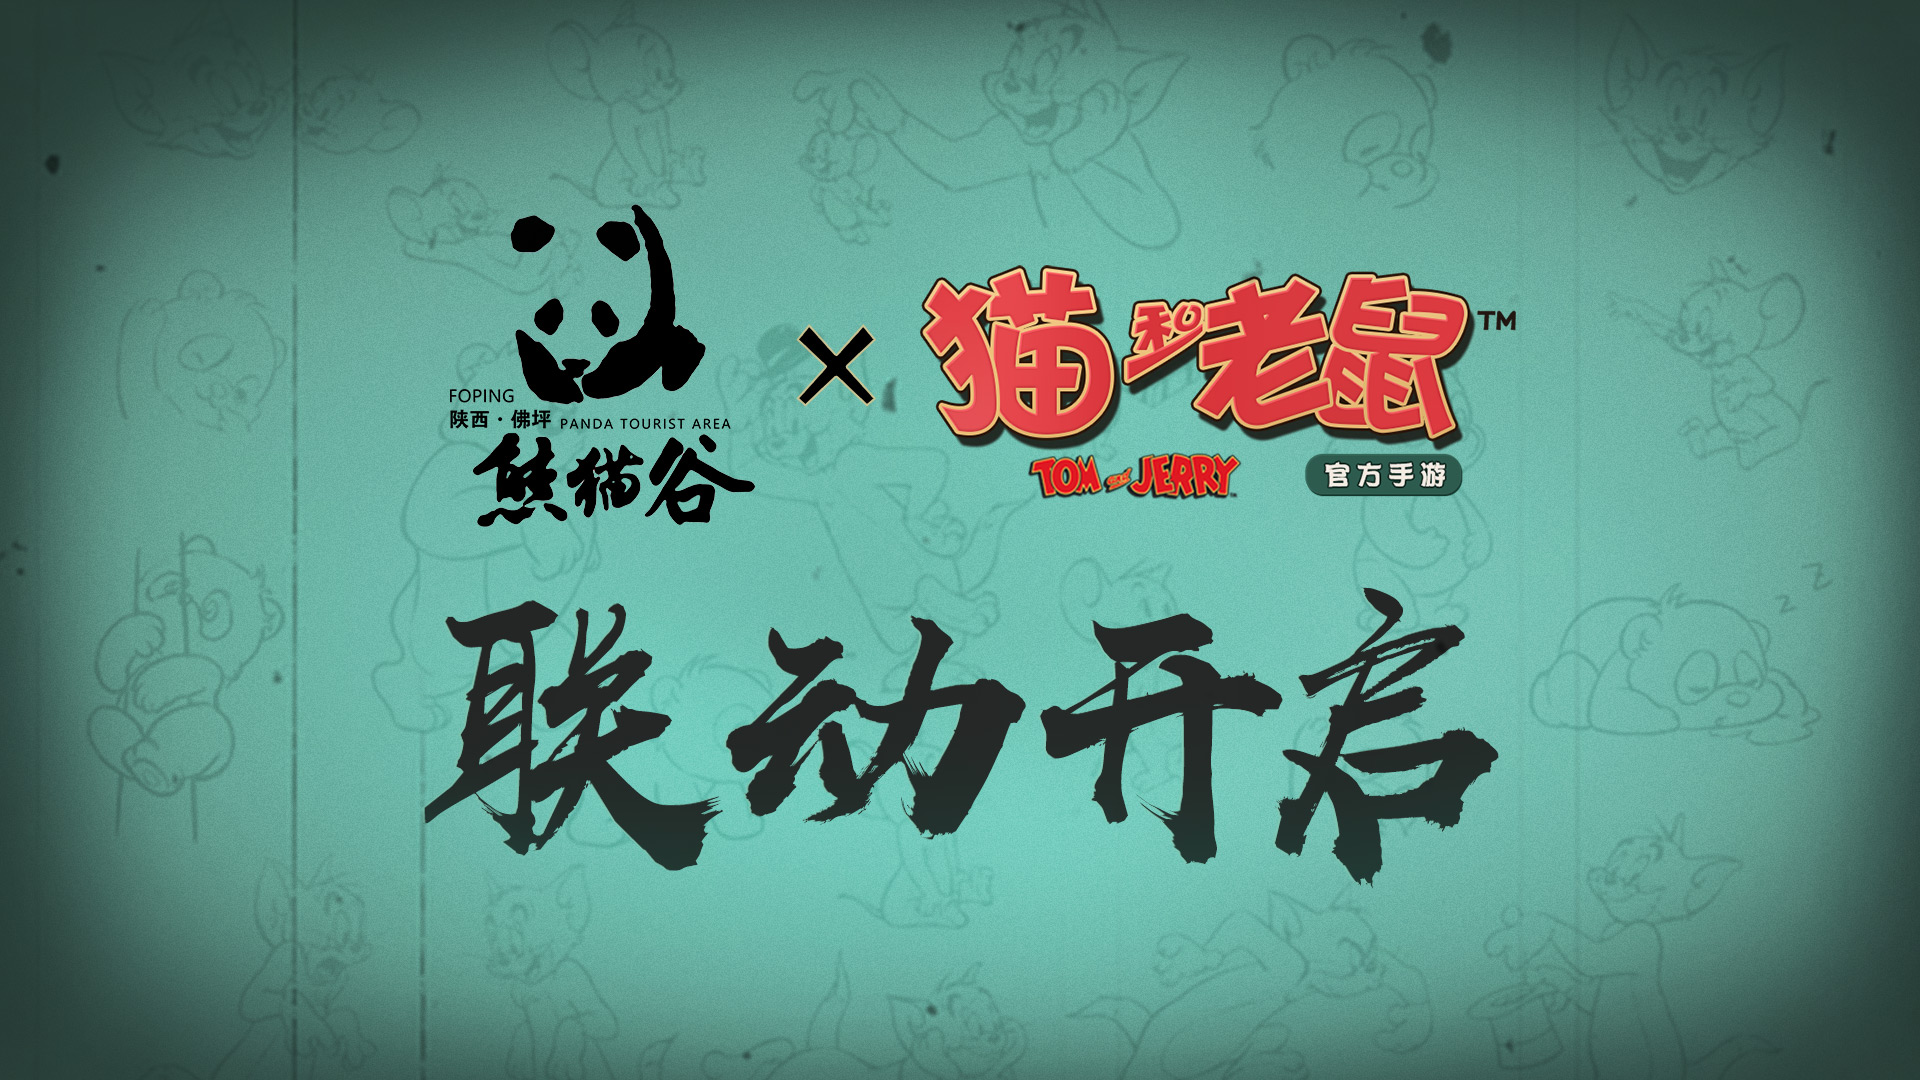 憨萌国宝入驻 《猫和老鼠》大熊猫联动视频发布